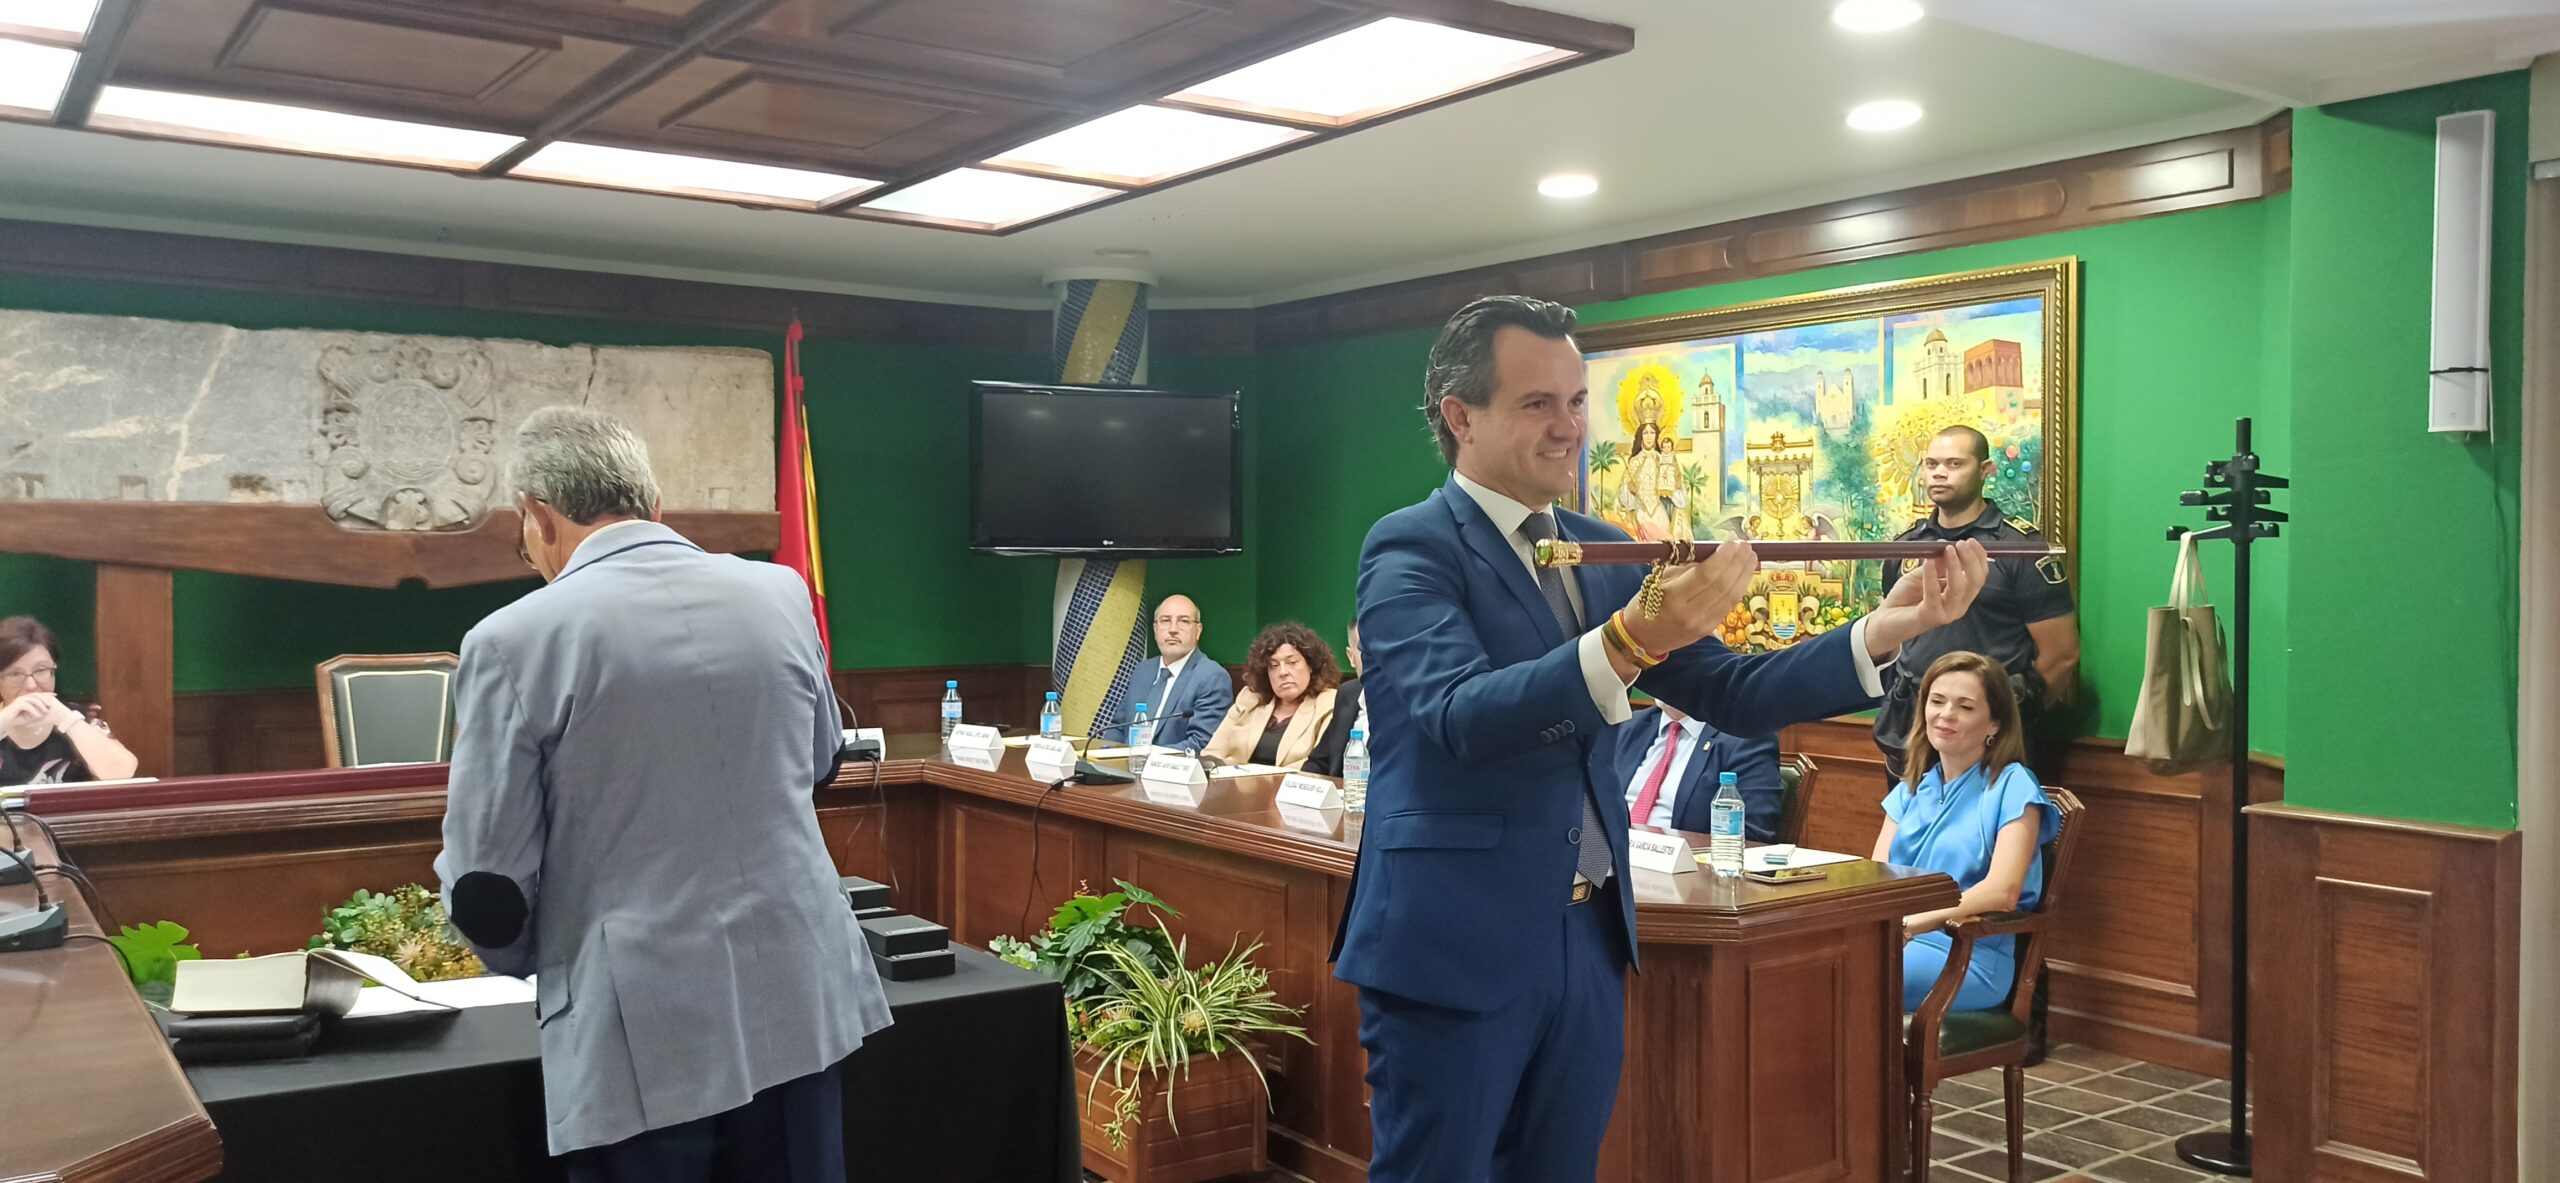 Vicente Cases consigue la alcaldía de Benejúzar para el Partido Popular